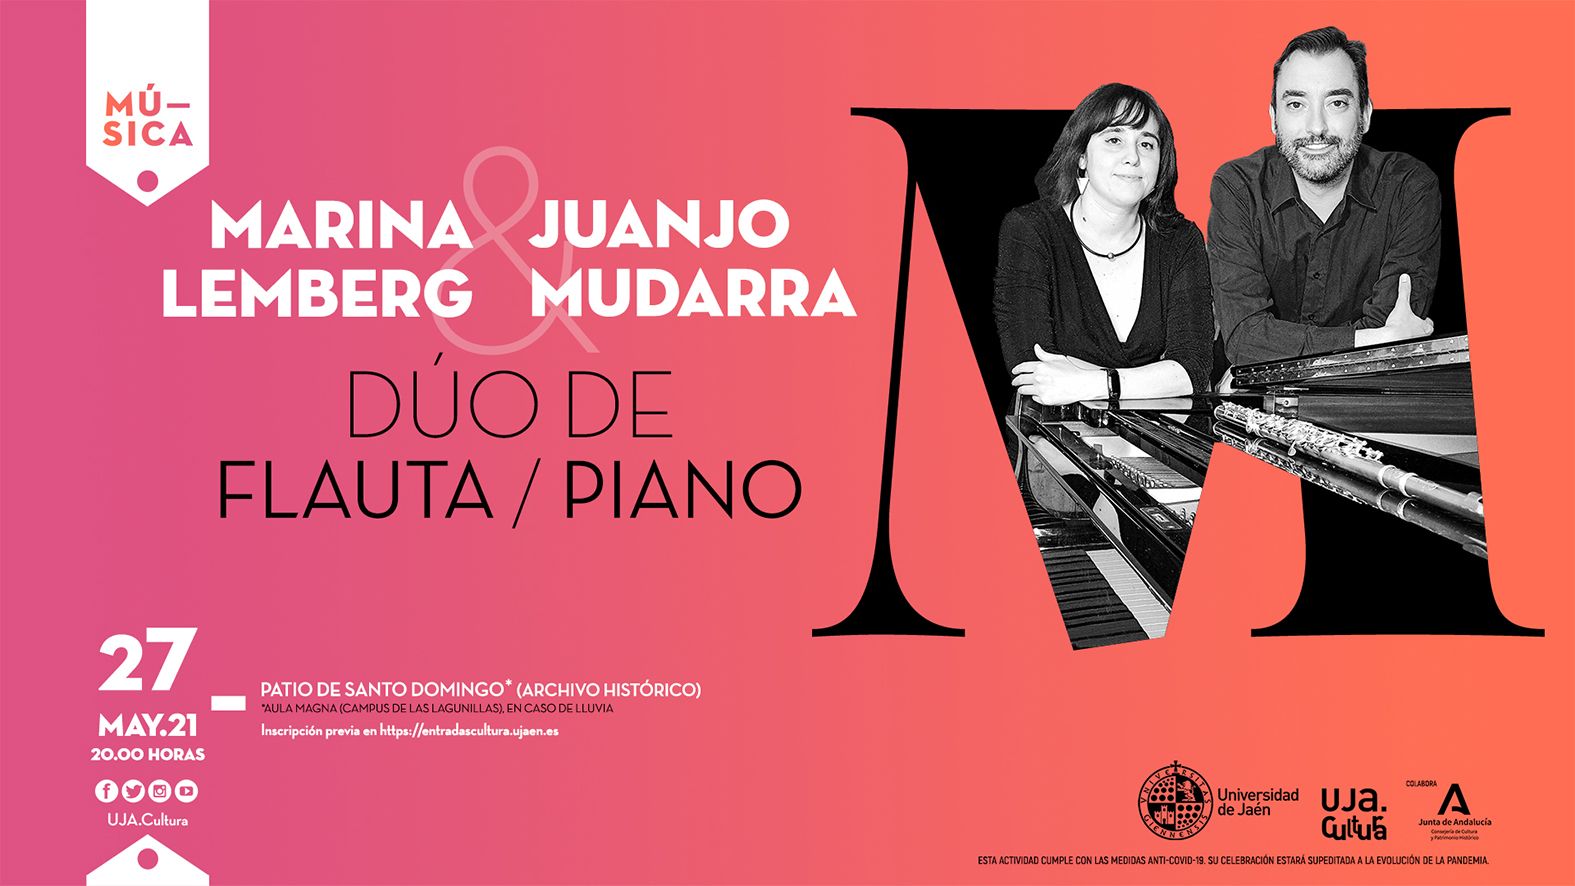 El patio del convento de Santo Domingo acoge el jueves el concierto de piano y flauta a cargo de Juan José Mudarra y Marina Lemberg